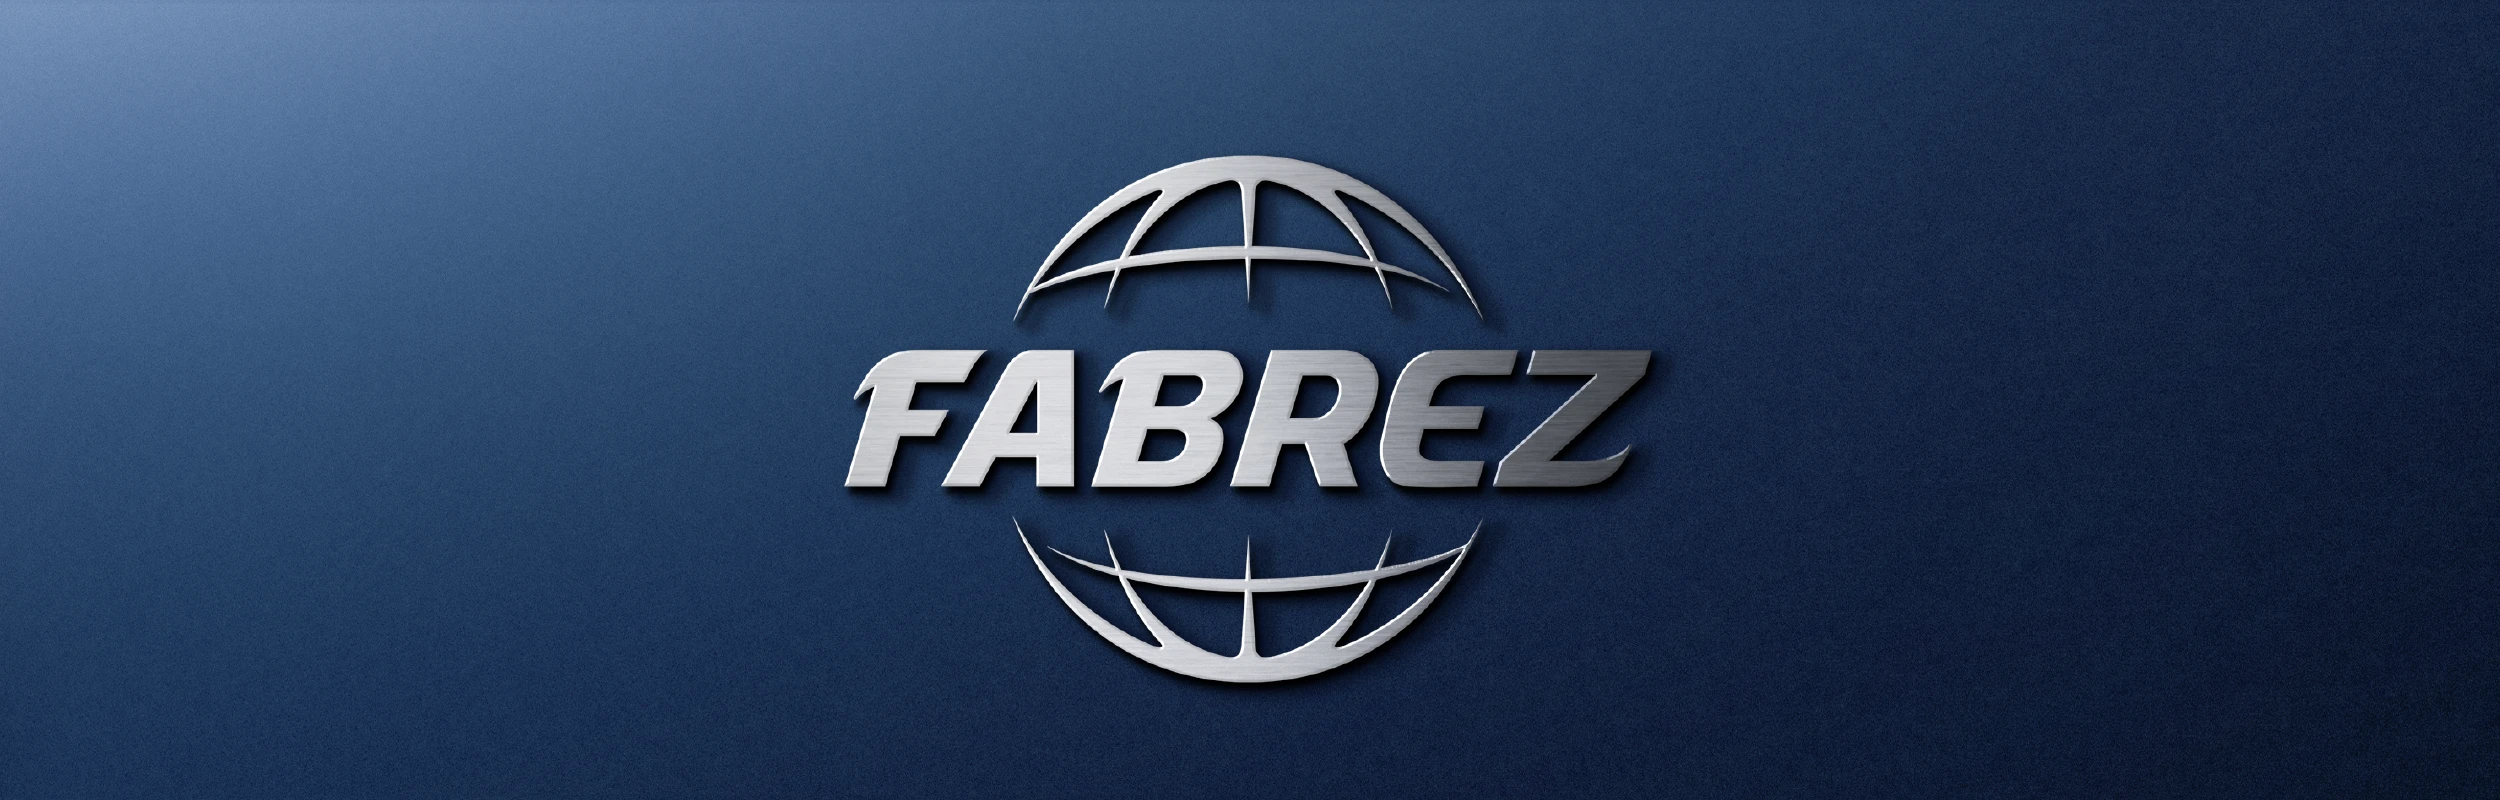 Fabrez Group - Treche Studio - Proyectos